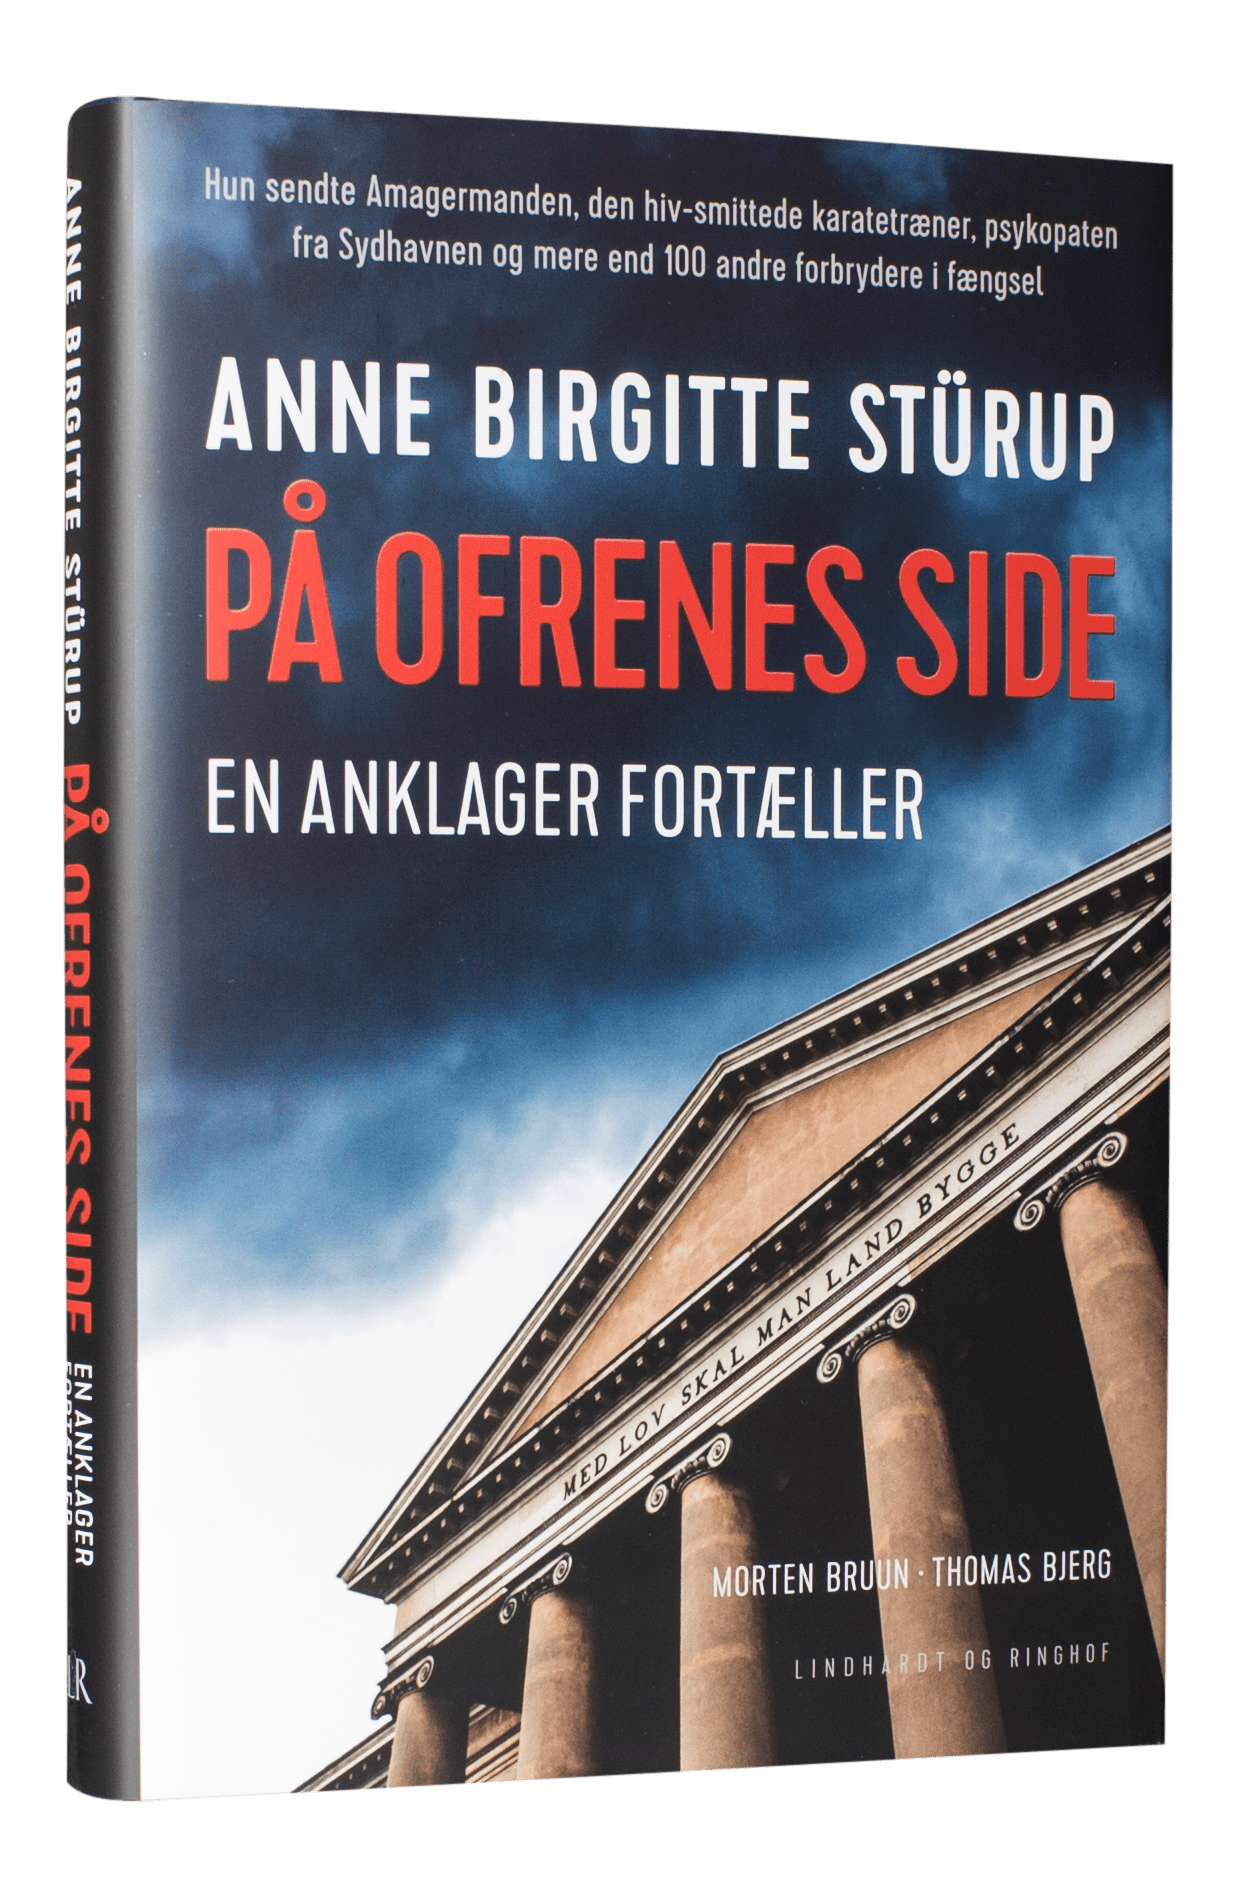 På ofrenes side, en anklagers liv, Thomas Bjerg, Anne Birgitte Stürup, Morten Bruun, true crime